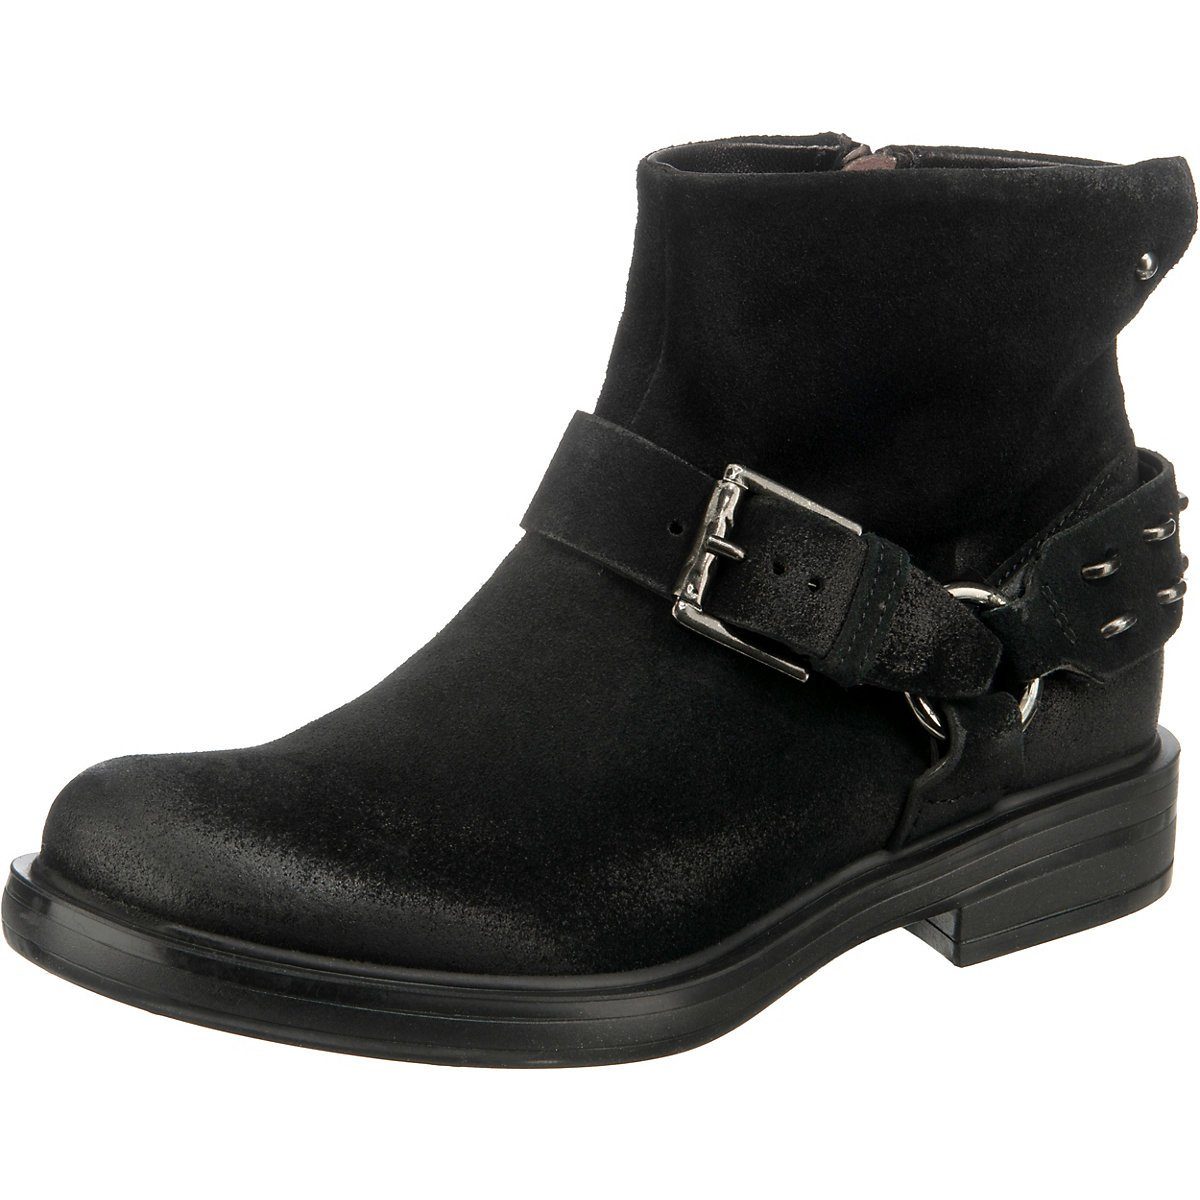 JOLANA & FENENA »J&F Buckle Ankle Boots« Stiefelette online kaufen | OTTO